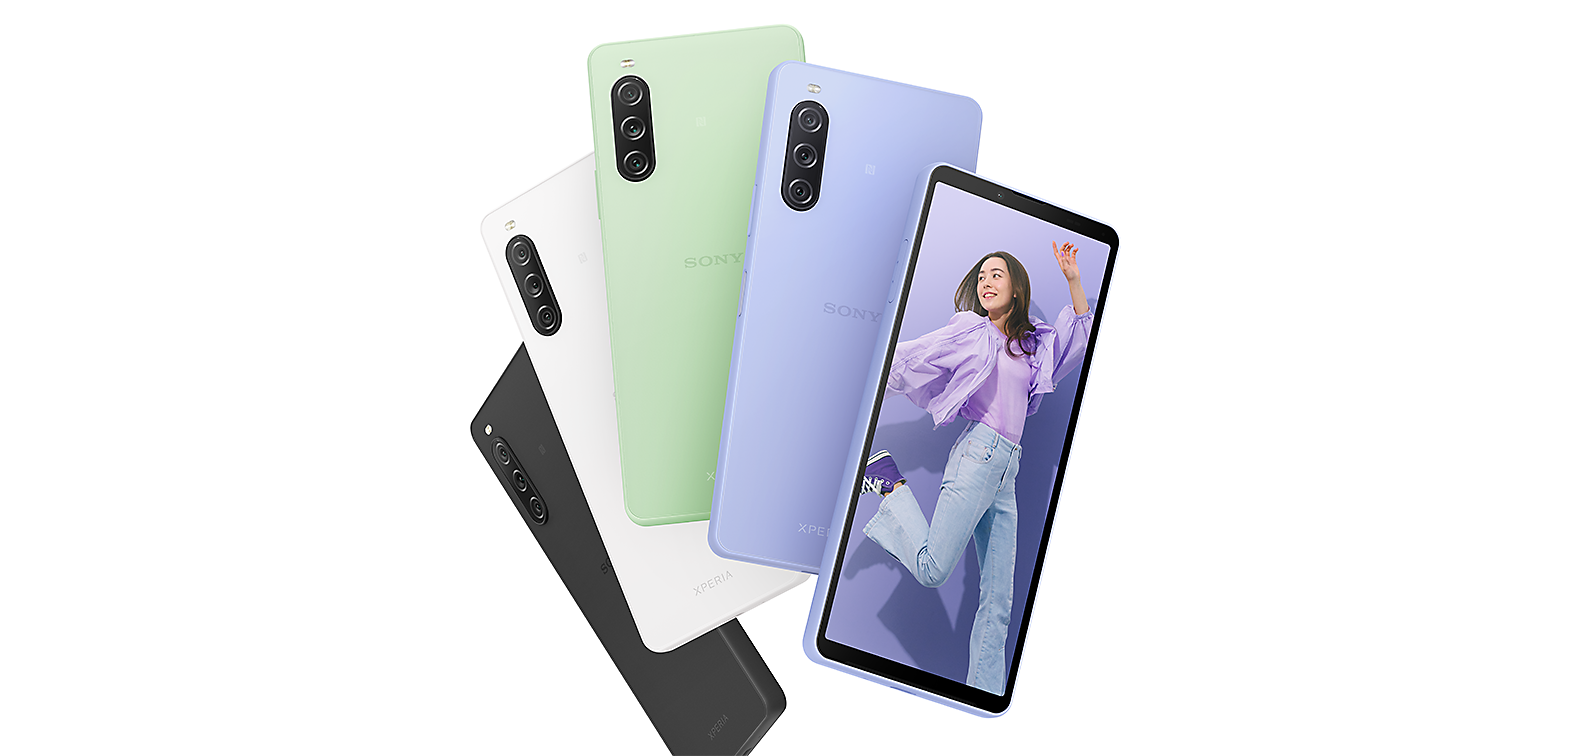 Bagudvendt Xperia 10 V-smartphones i sort, hvid, grøn og lavendelblå plus frontvendt Xperia 10 V i lavendelblå, der viser et billede af en ung kvinde